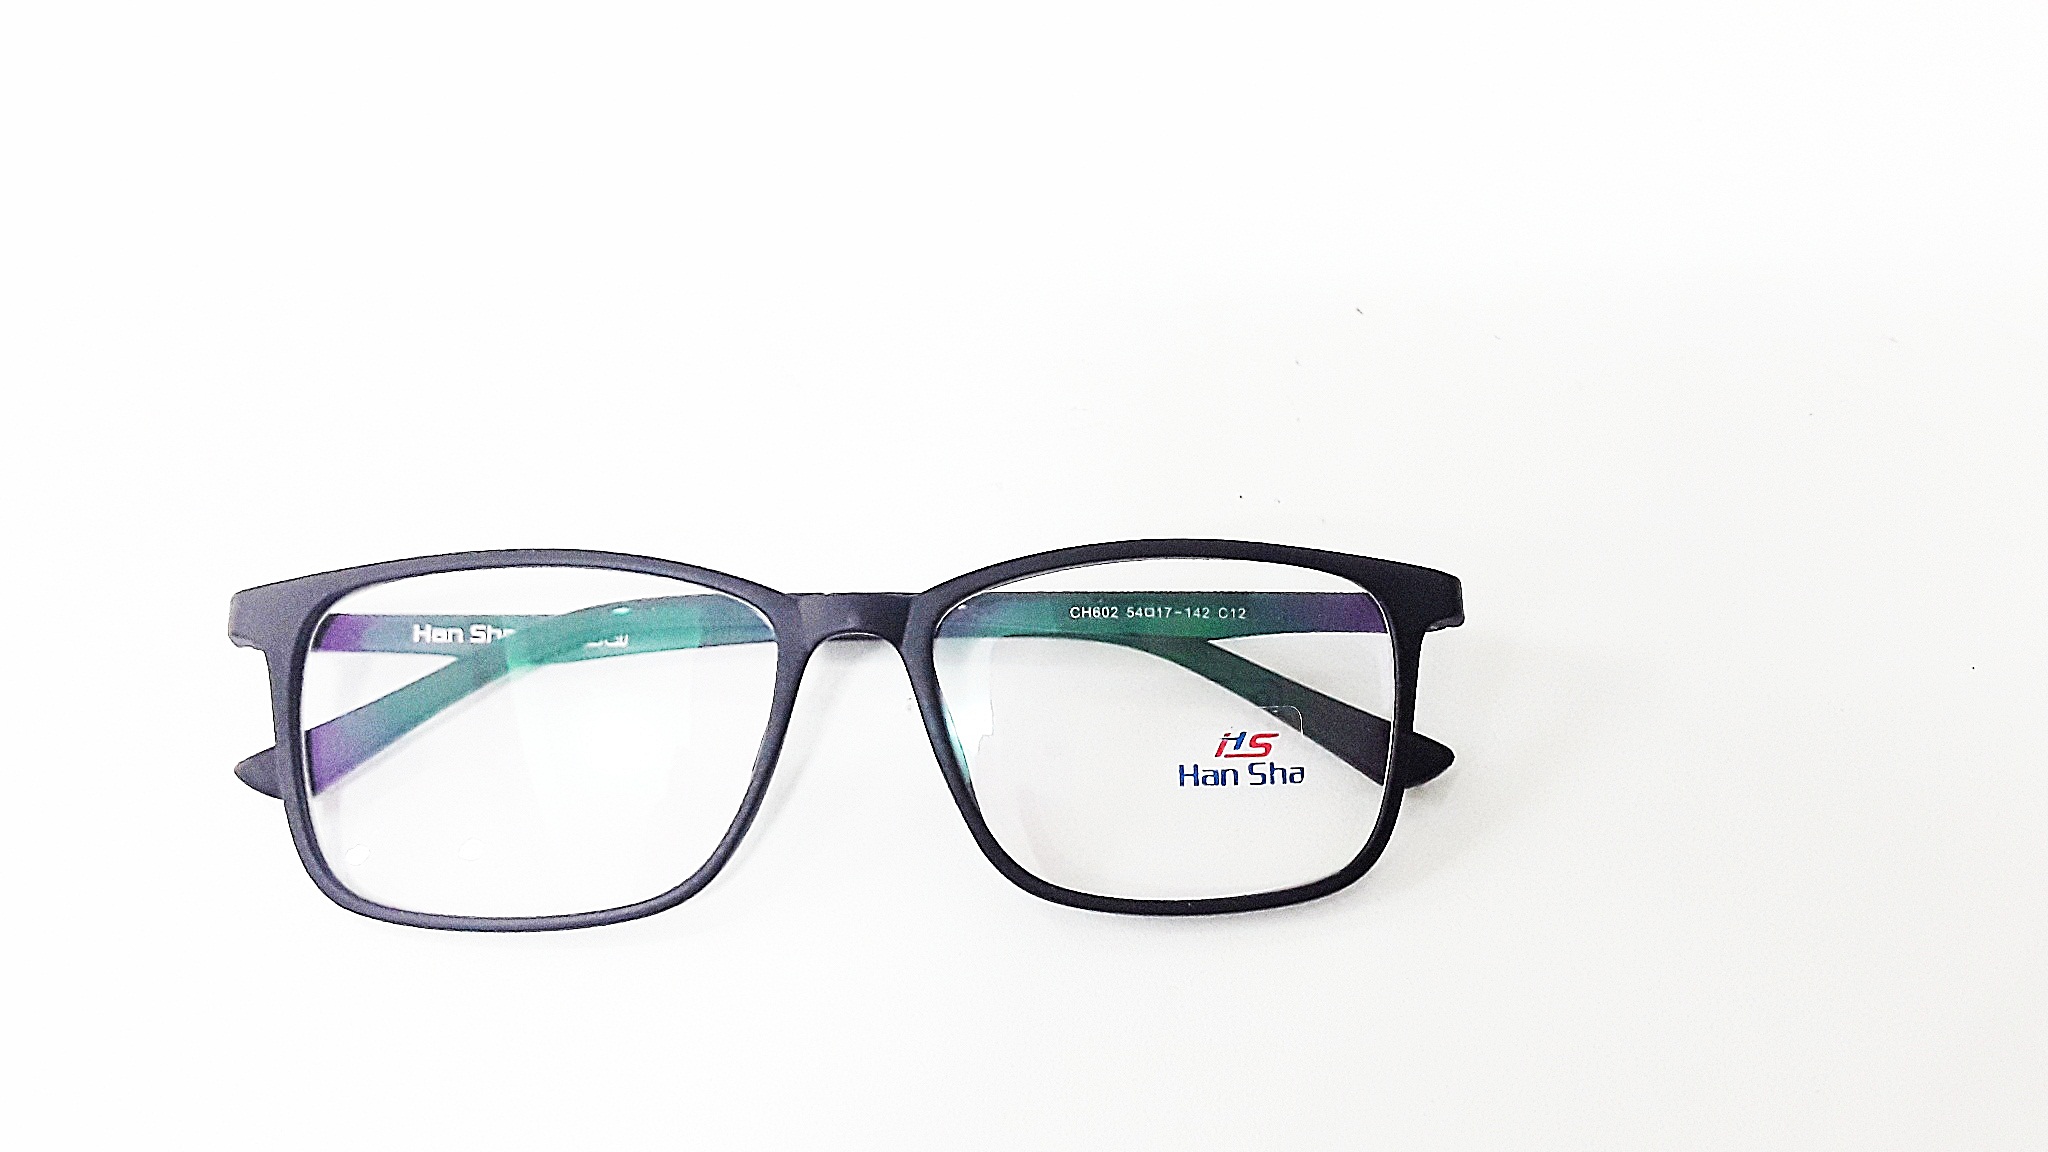 แว่นตา แว่นสายตายาว แว่นอ่านหนังสือ ตัดแว่น กรอบพร้อมเลนส์ตัด ออโต้เปลี่ยนสีอัตโนมัติ แว่นตัด โดยร้านแว่นคุณภาพมาตรฐาน กรอบ CH602